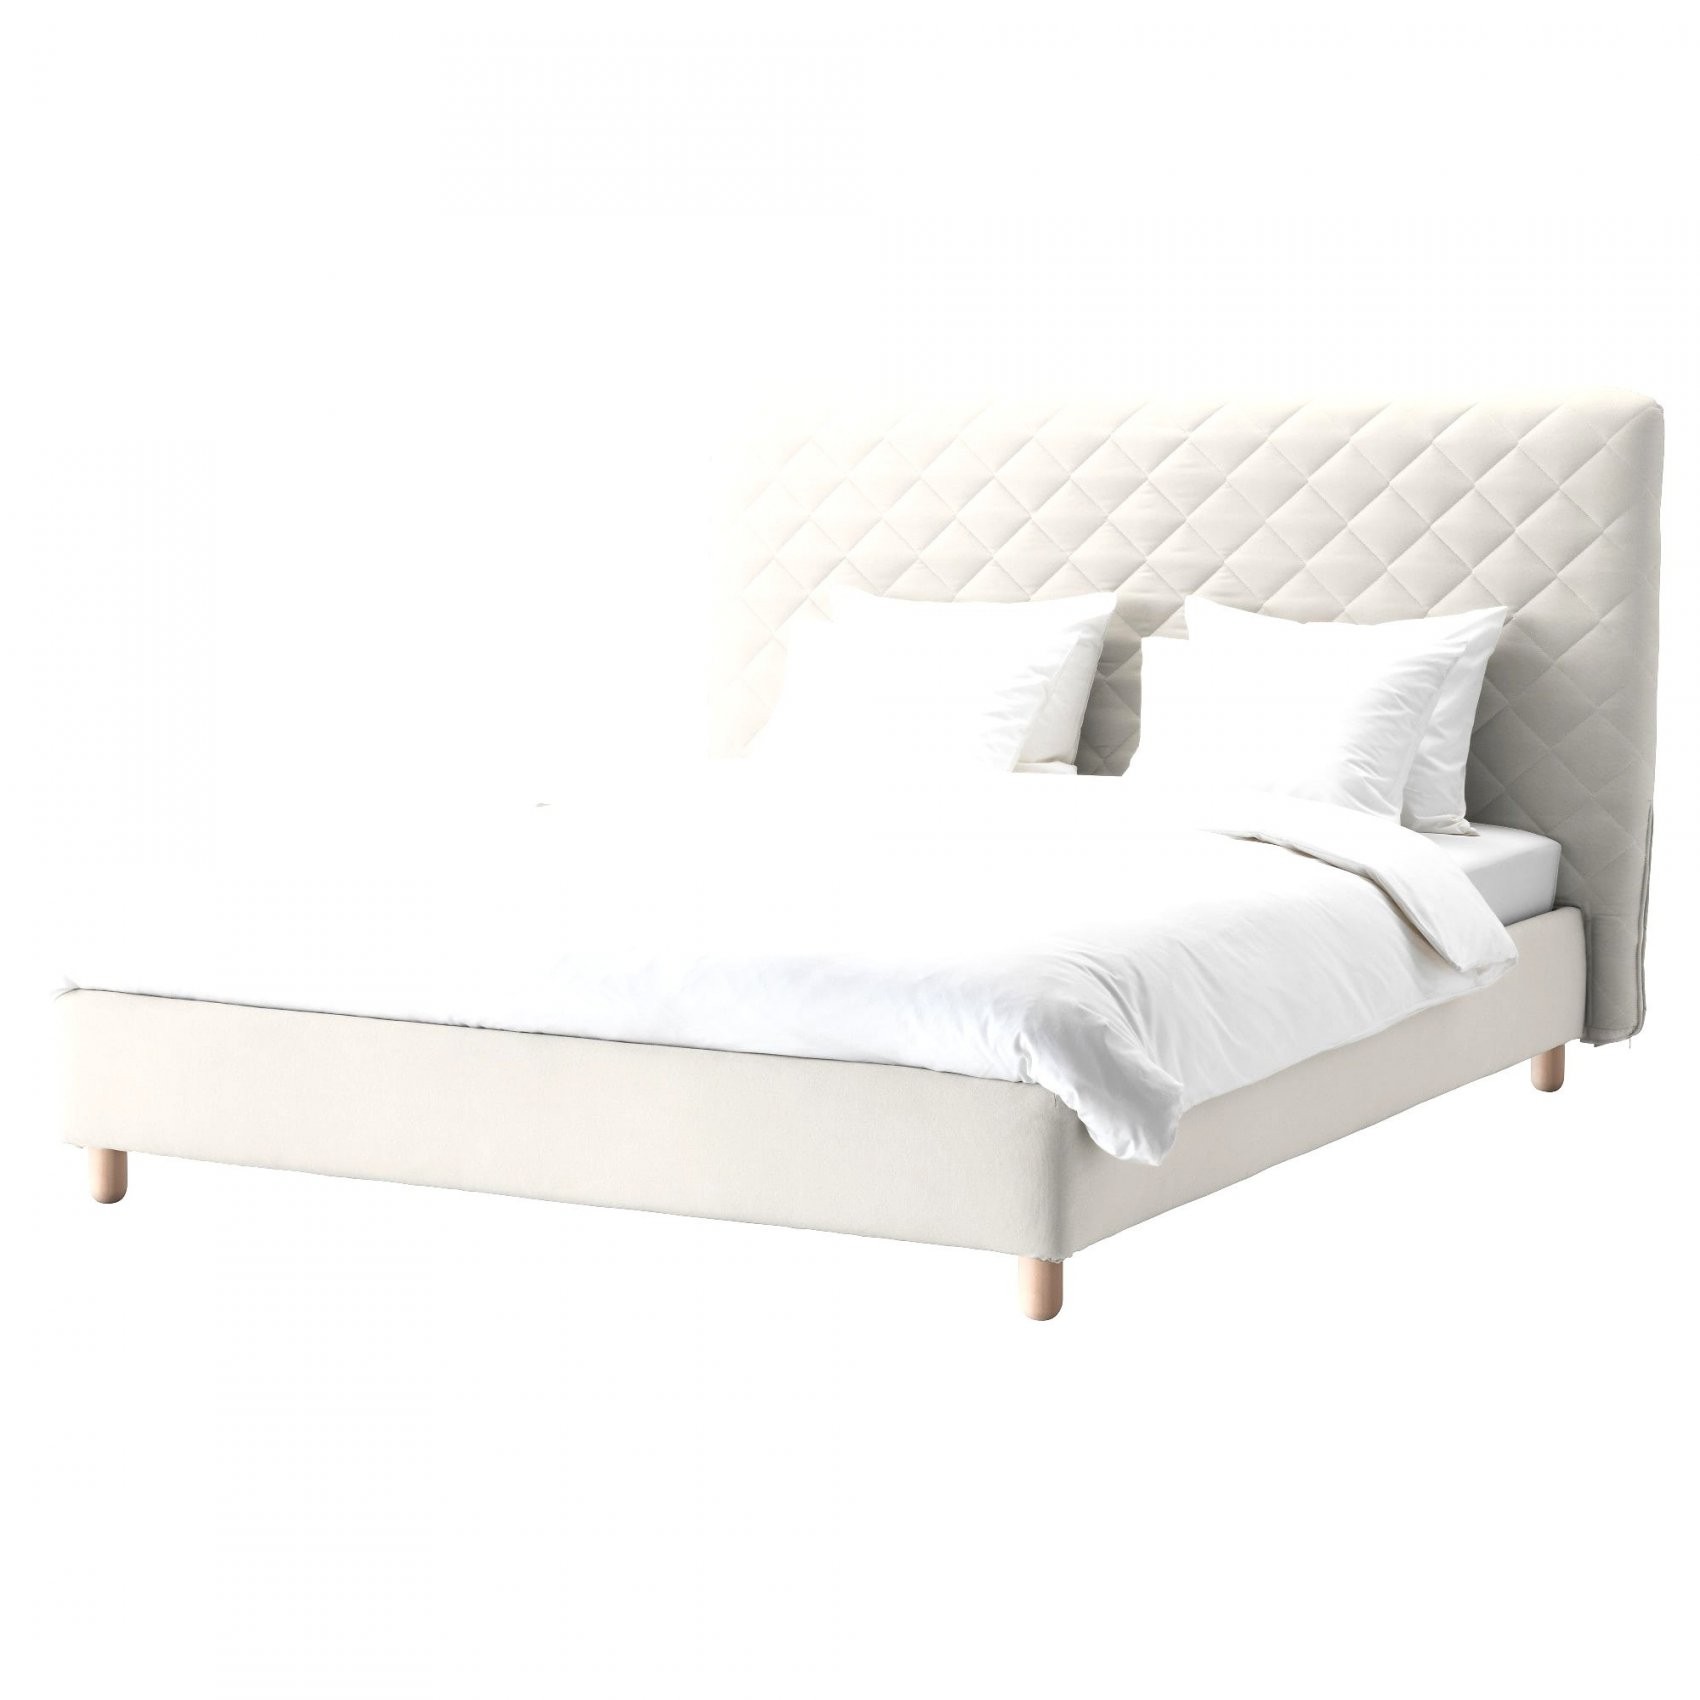 Futonbett 160×200 Mit Matratze Und Lattenrost Elegant Bett 120—200 von Bett Mit Matratze Und Lattenrost 160X200 Bild